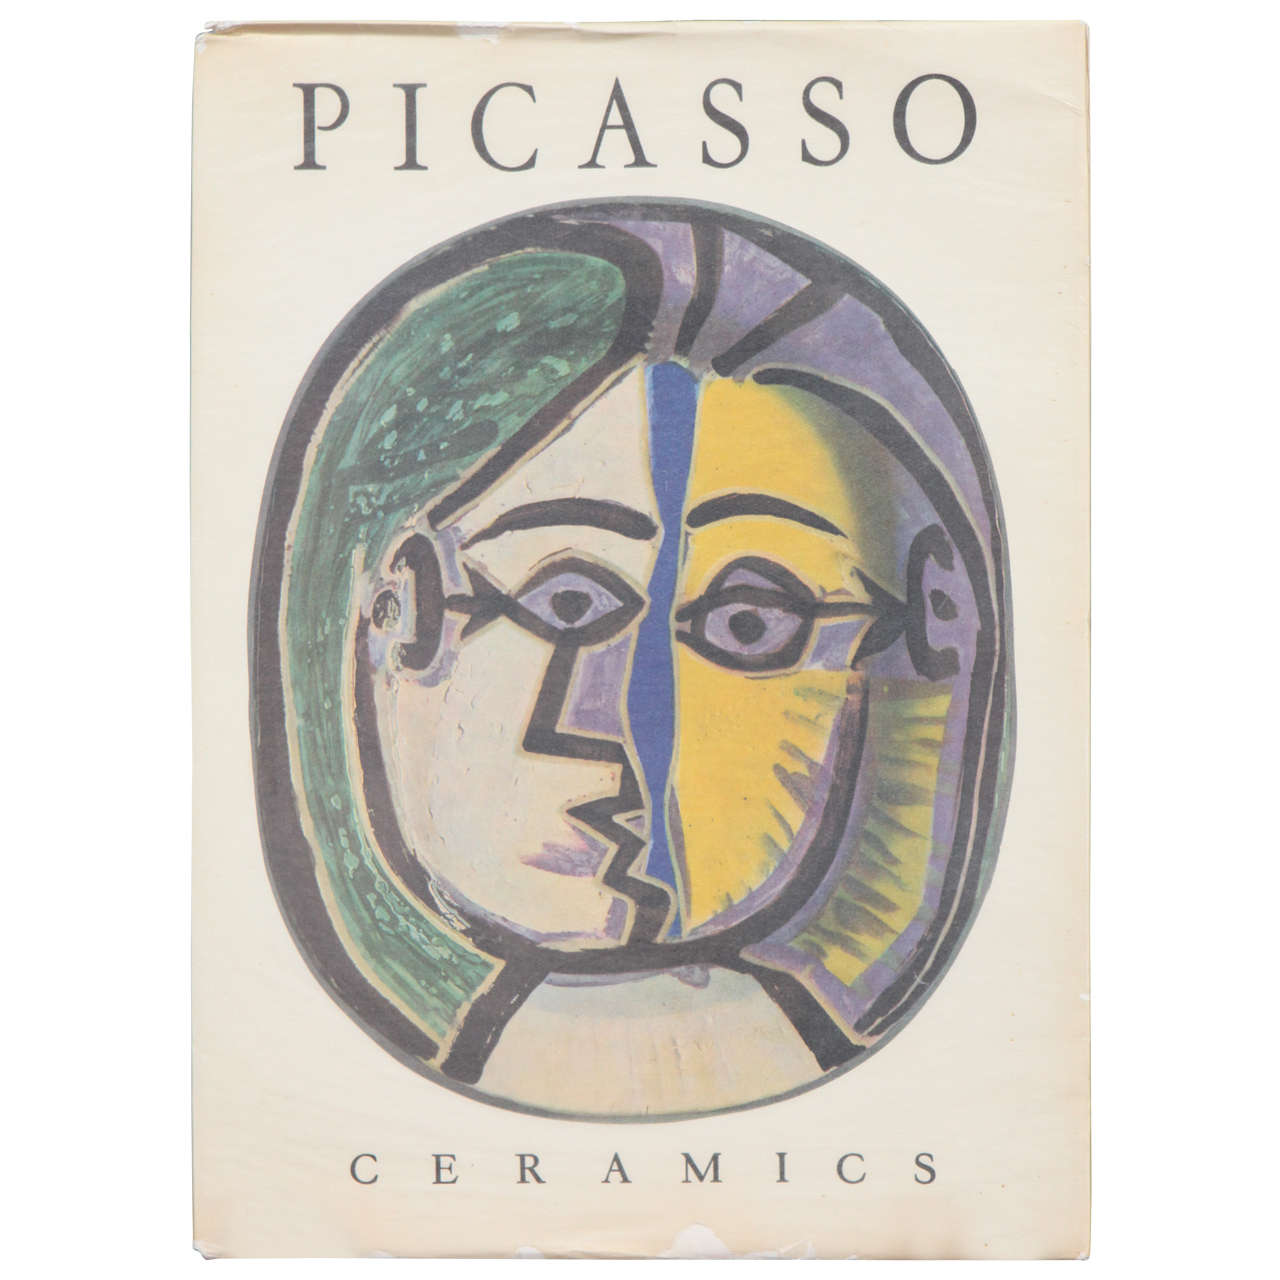 1955 Book "Folio of Picasso Ceramics"